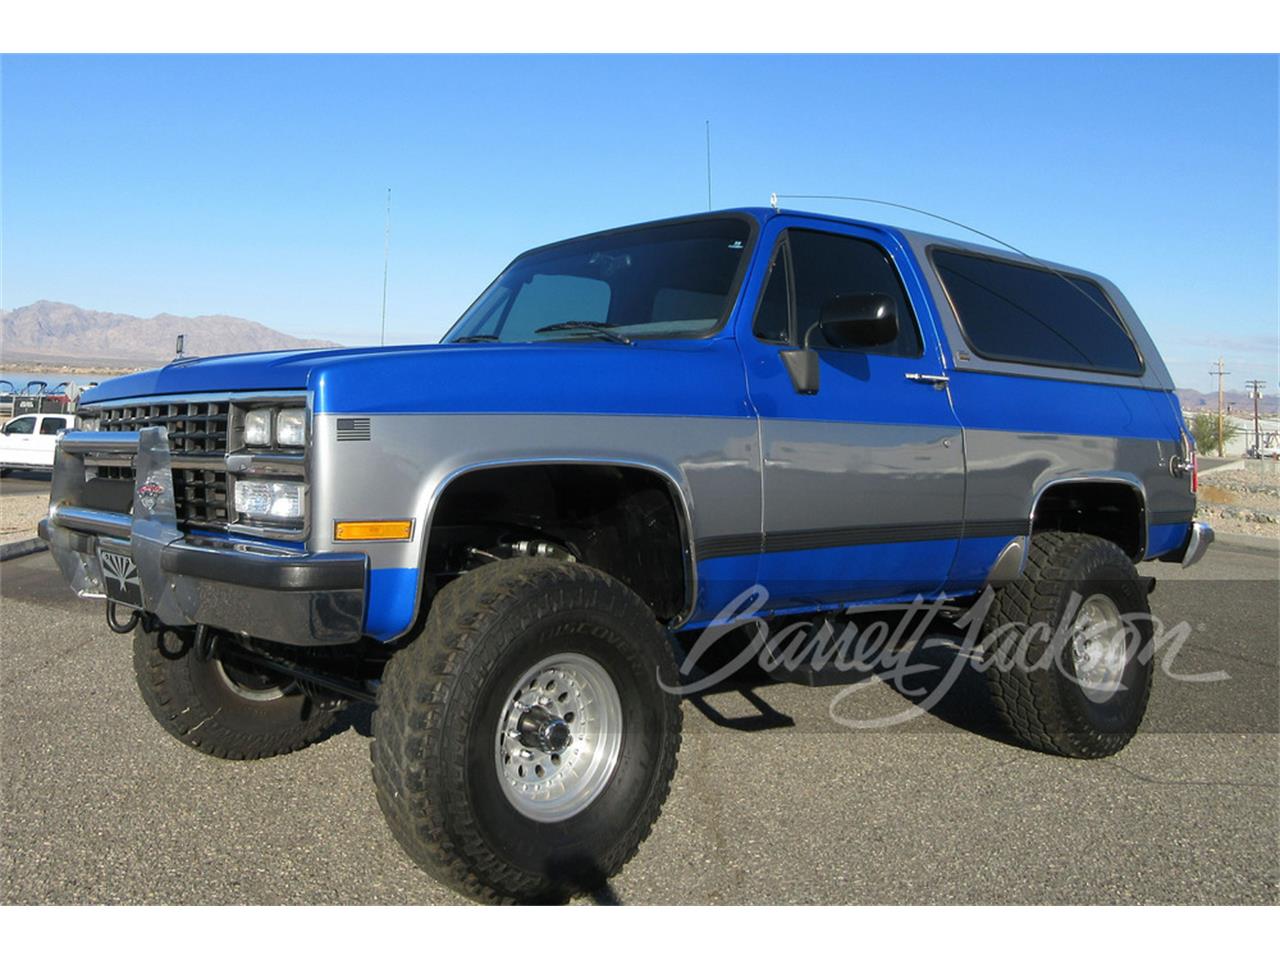 1989 Chevrolet Blazer for Sale | ClassicCars.com | CC-1807772